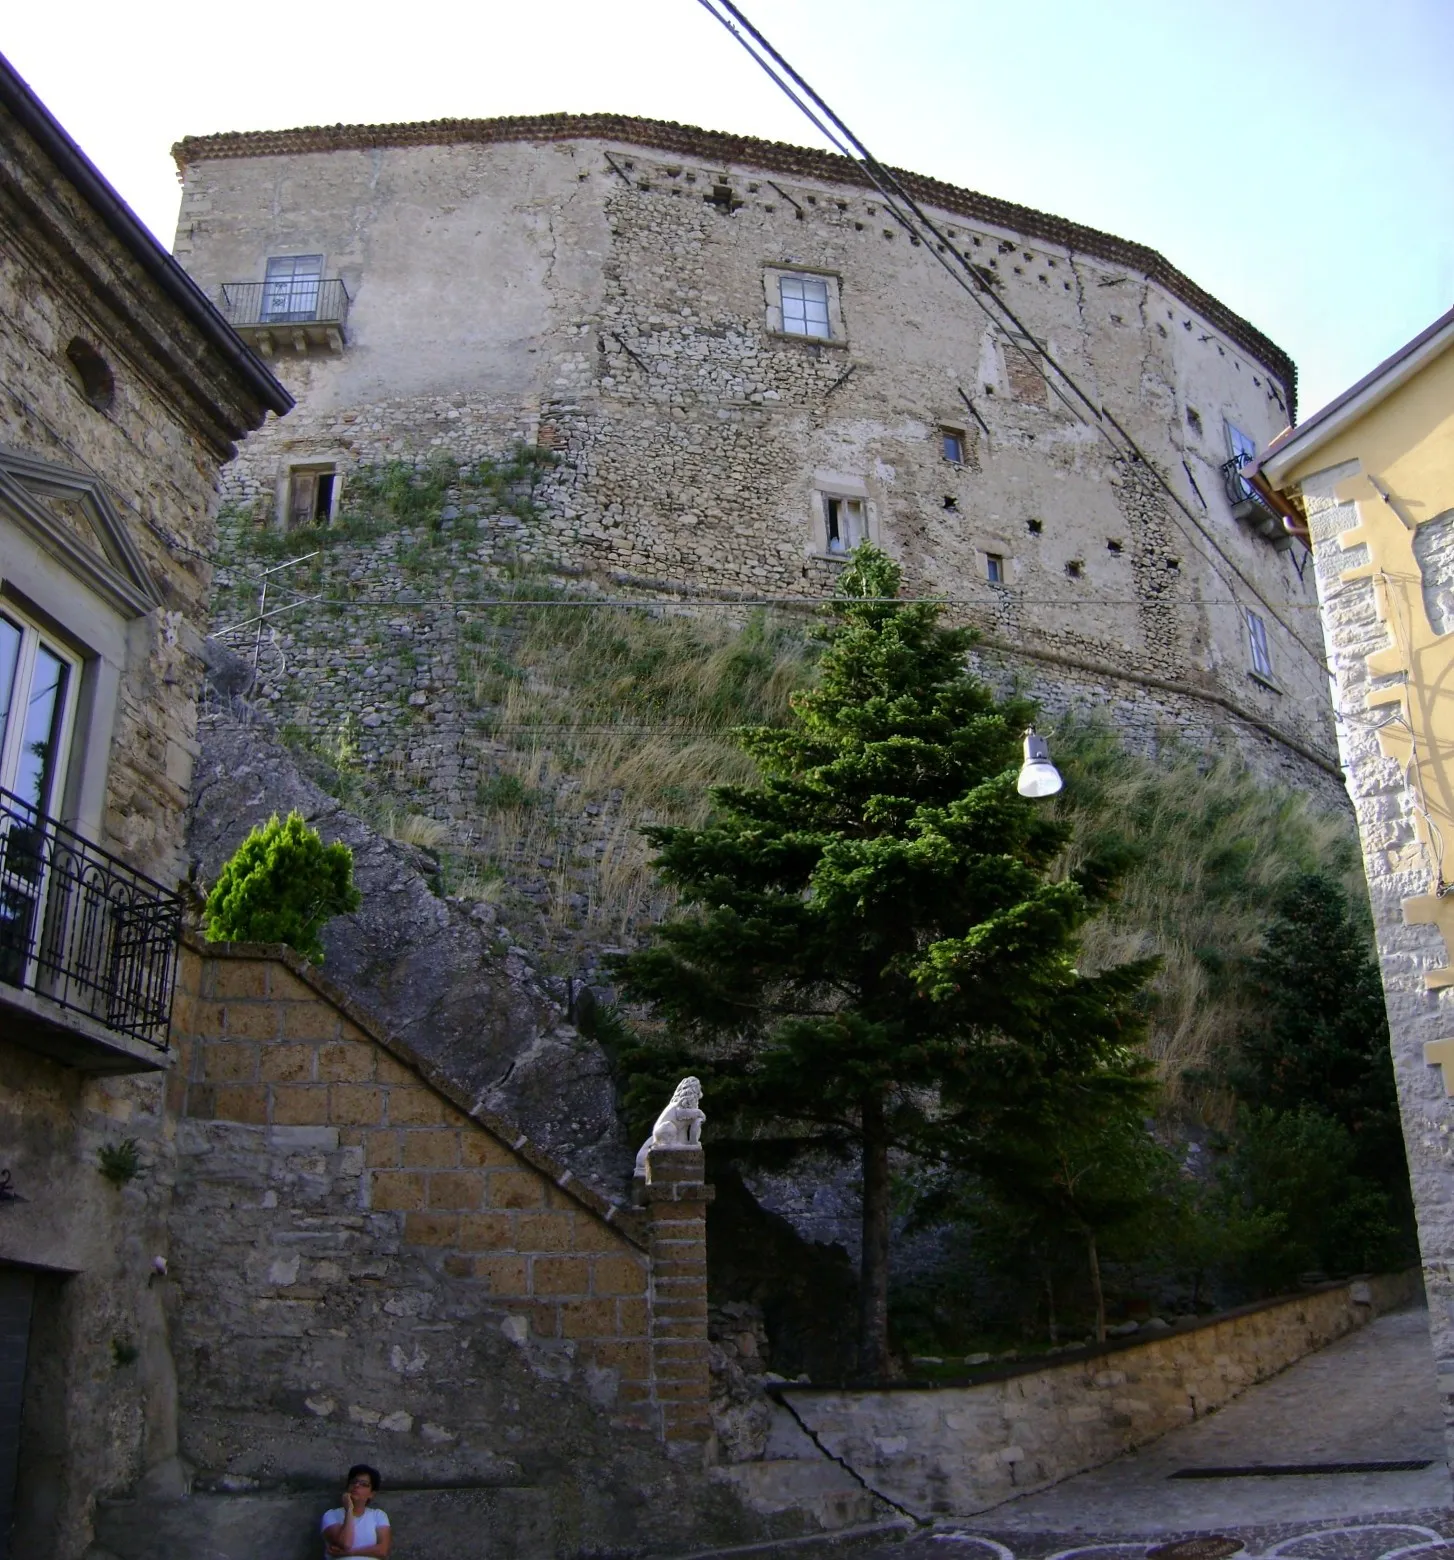 Photo showing: The castle Franceschelli, Montazzoli, province of Chieti, Abruzzo